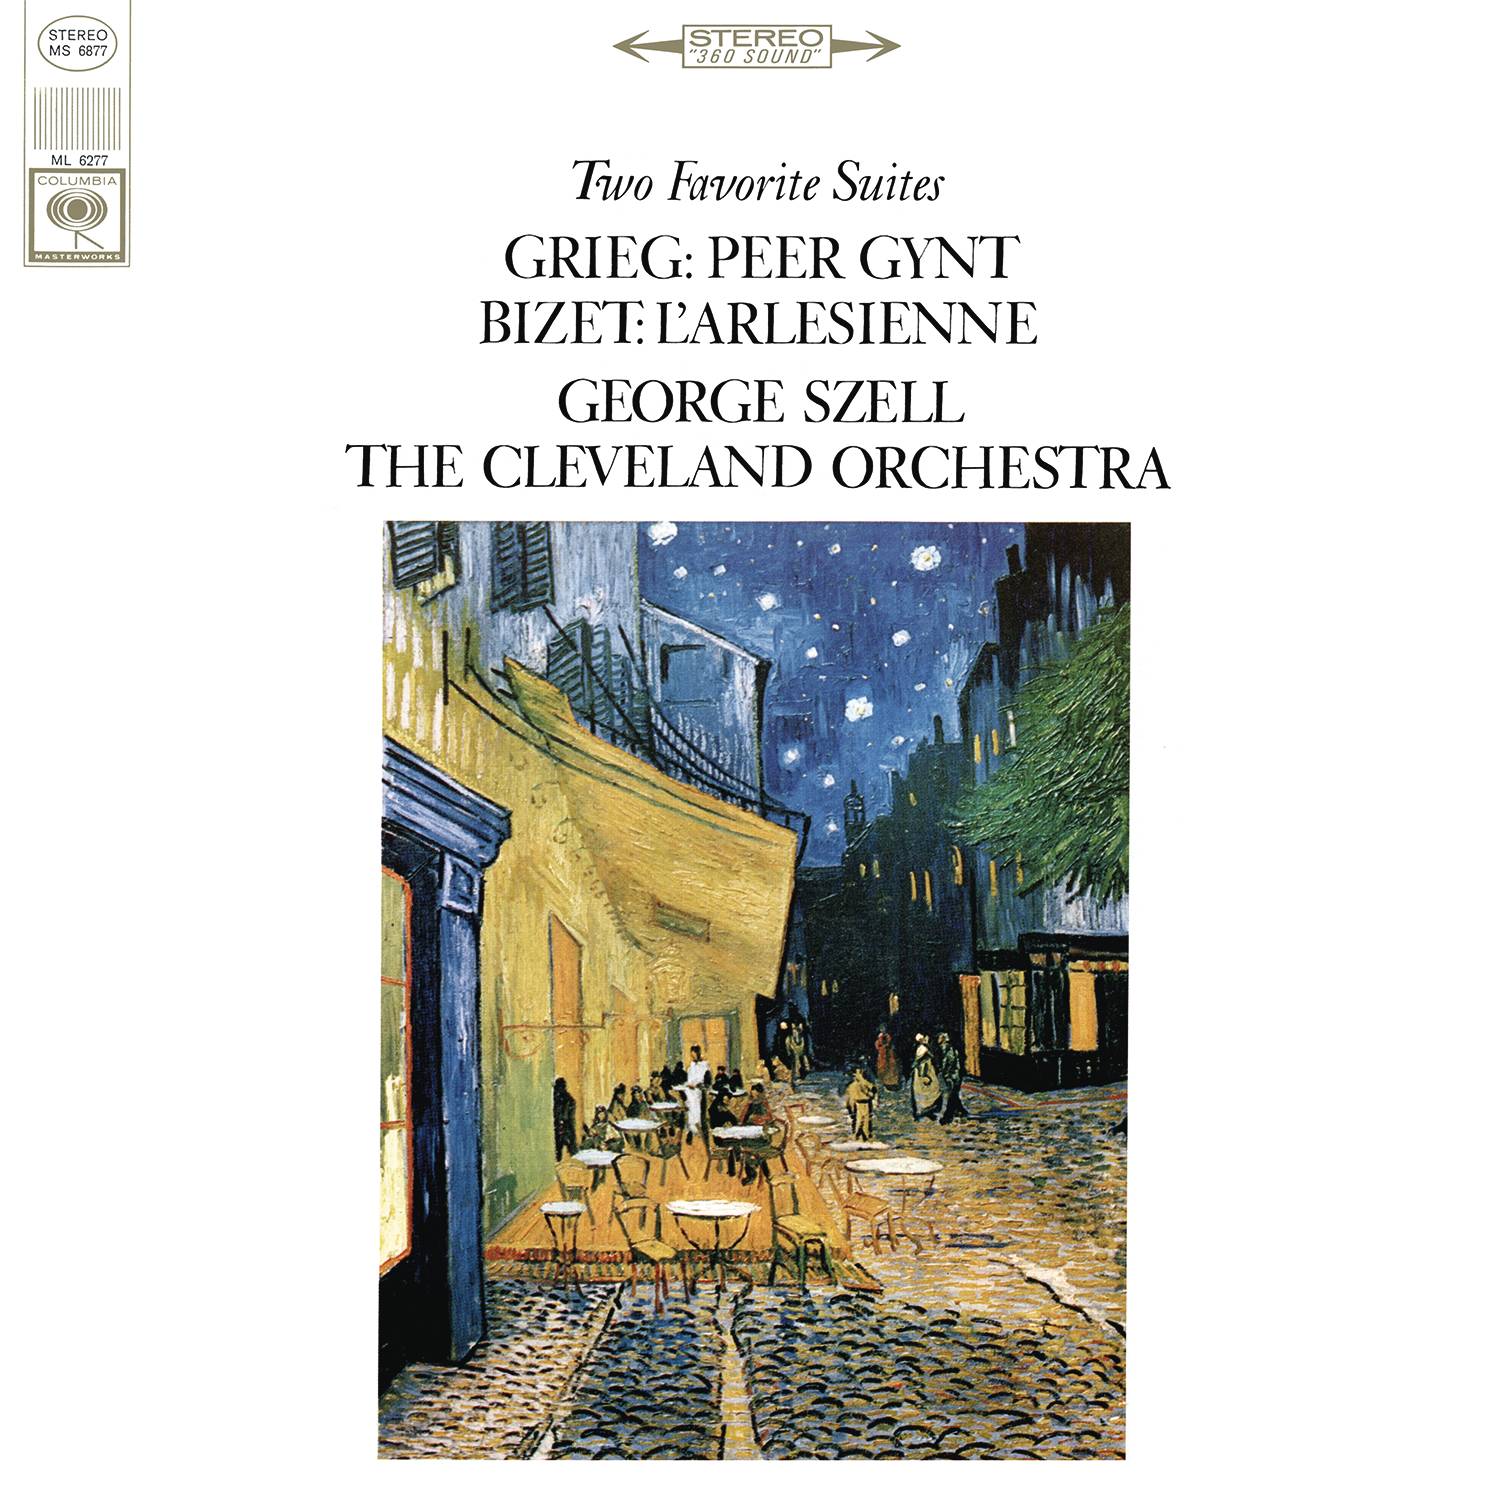 Bizet: L' Arle sienne  Grieg: Peer Gynt Suite No. 1, Op. 46